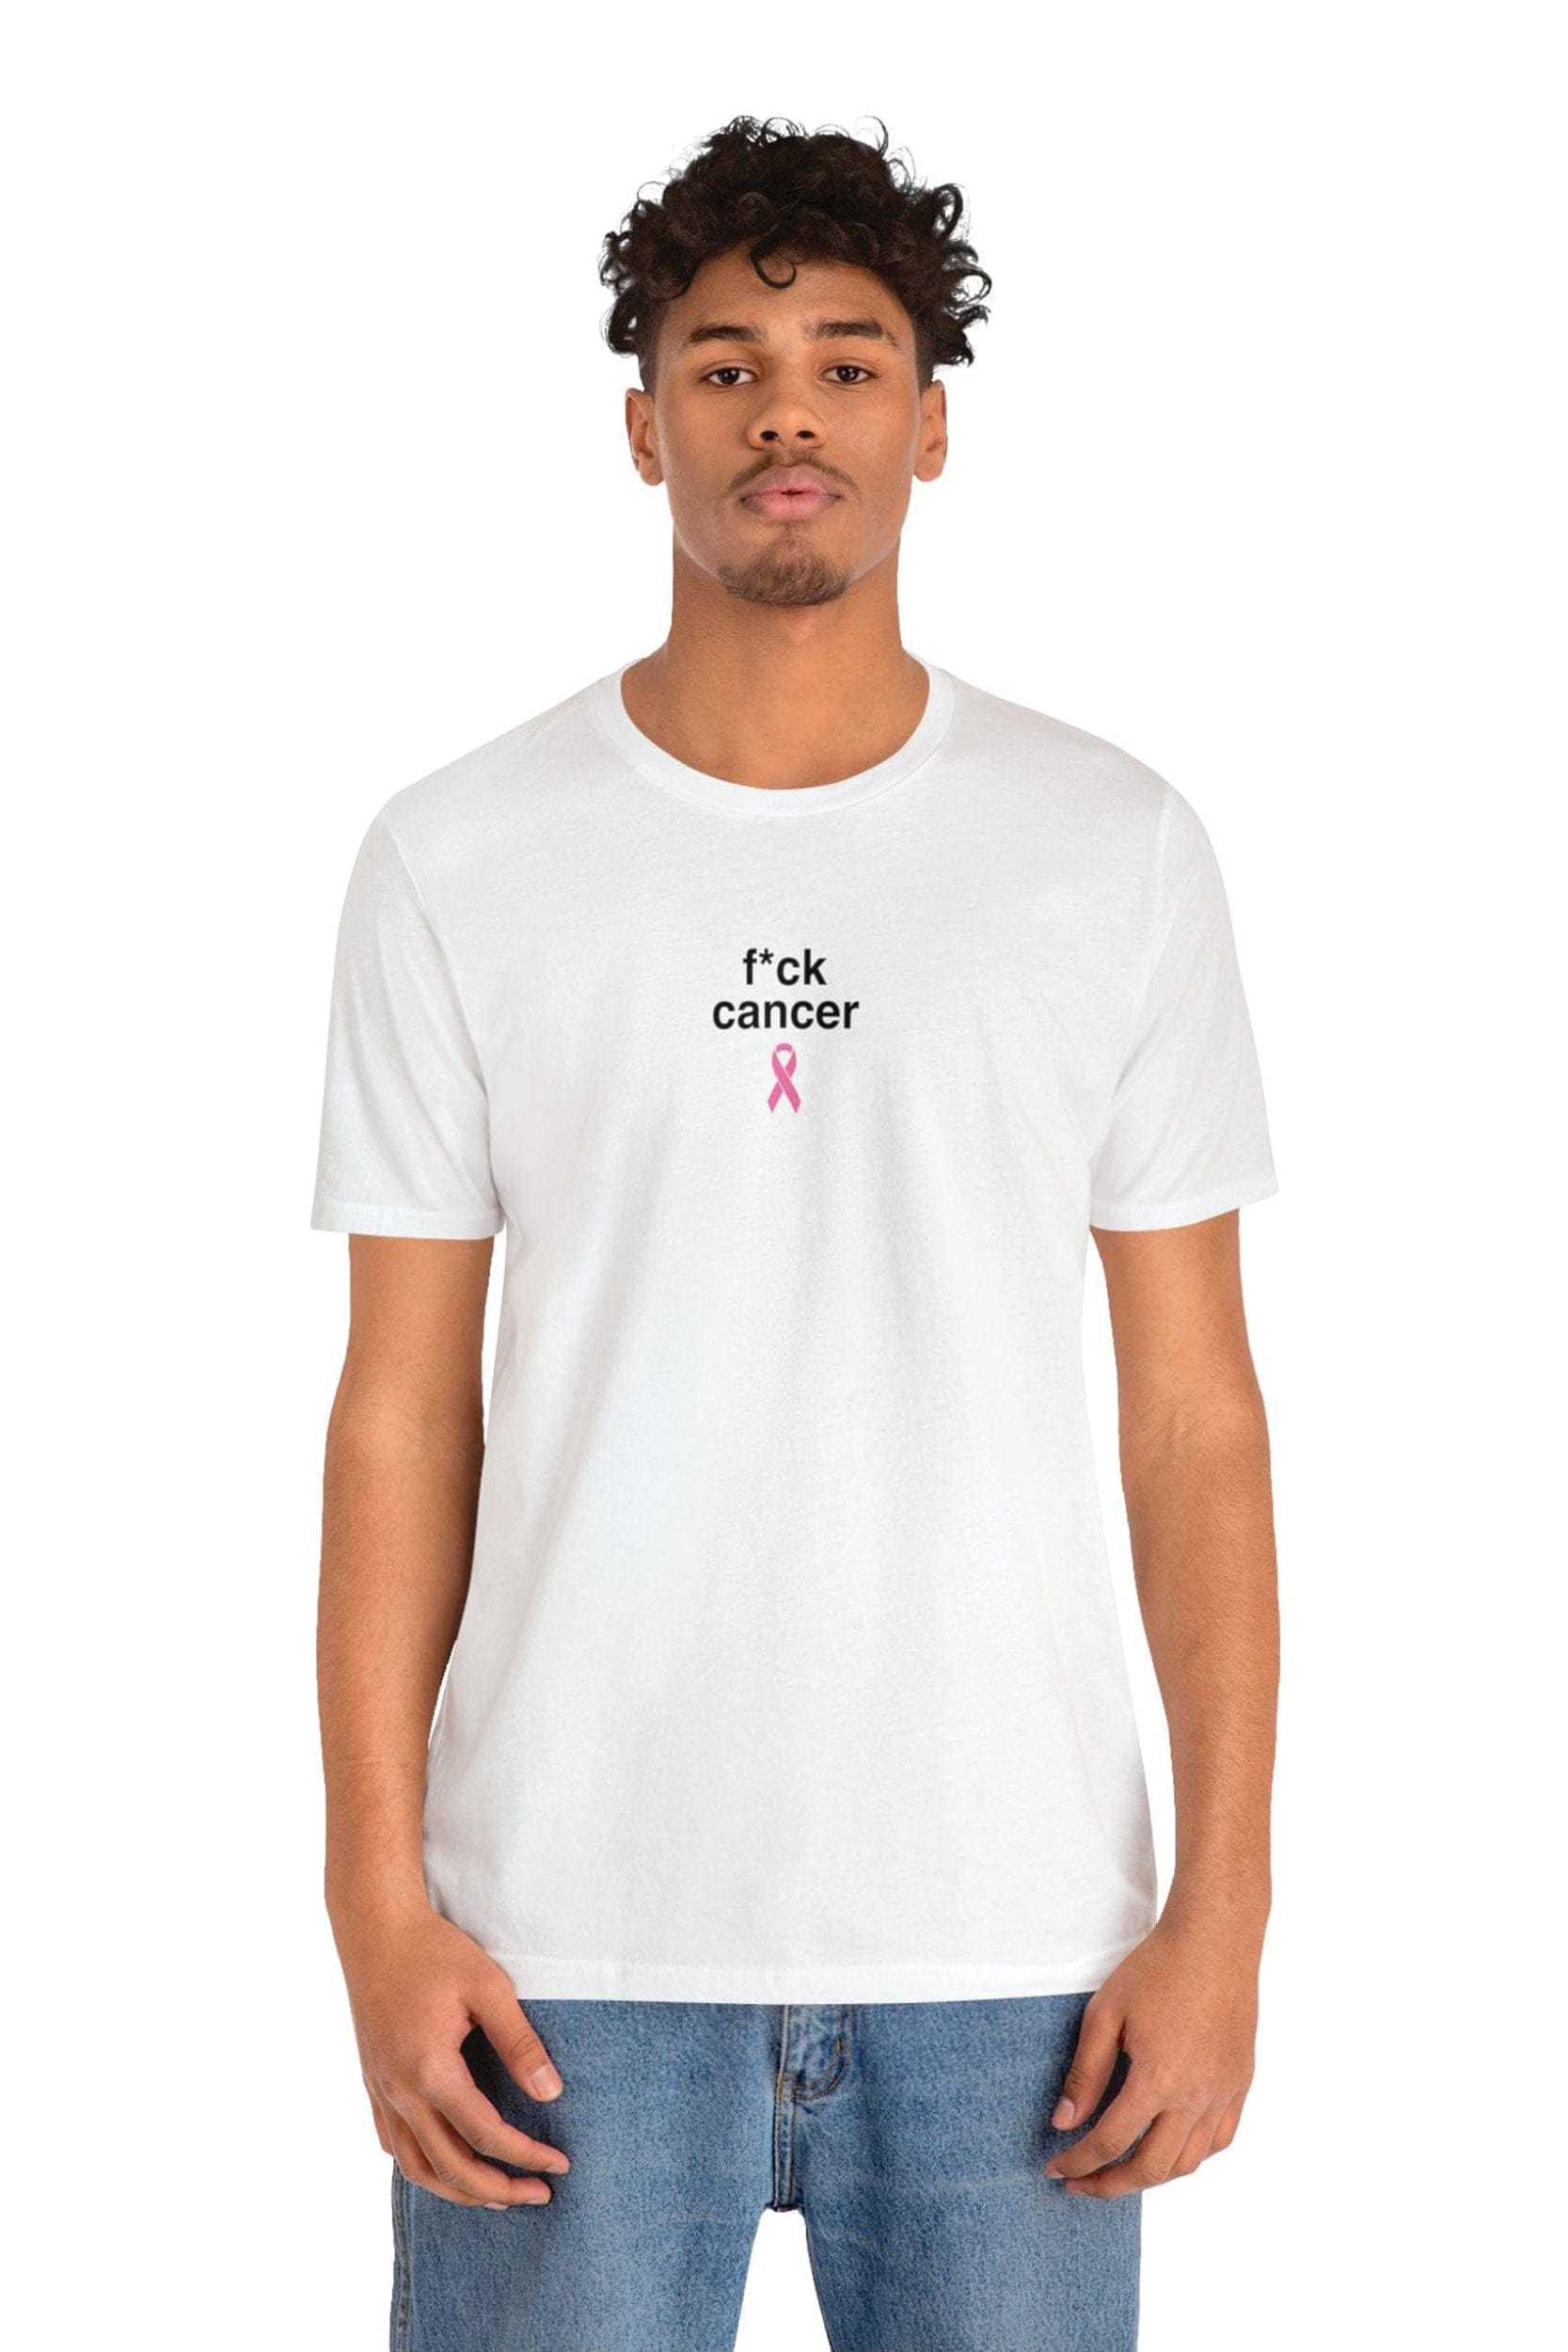 "f*ck cancer" T-Shirt